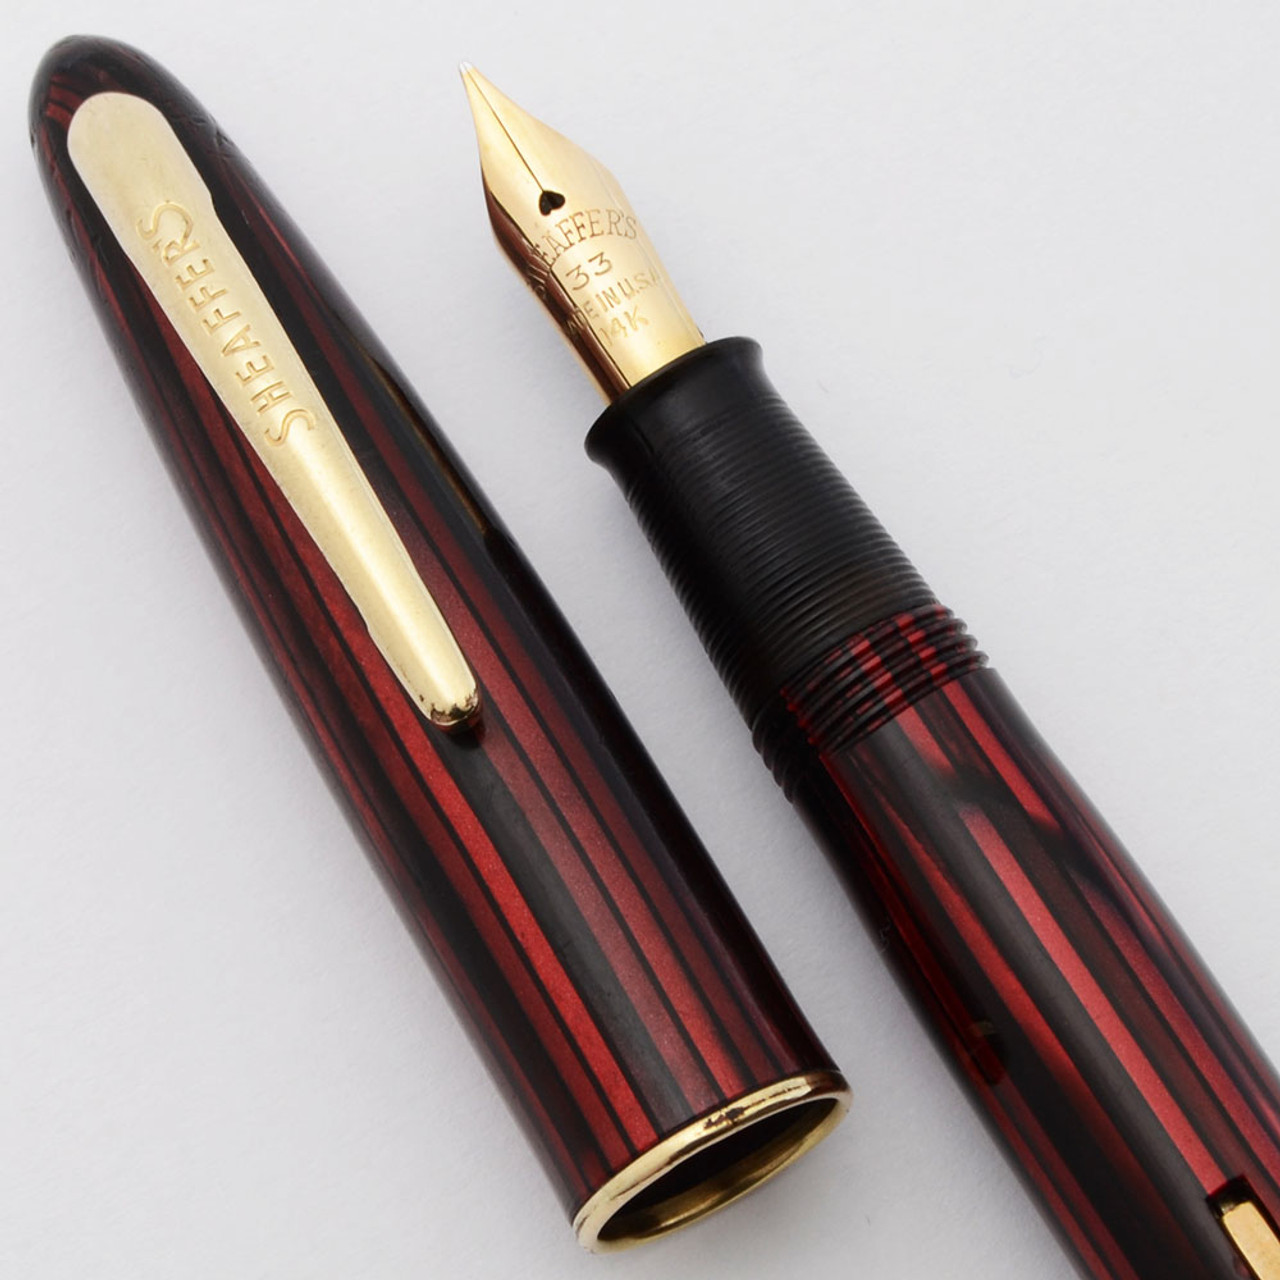 Sheaffer Craftsman Fountain Pen (1950s) - Carmine w/GT,  Lever Filler, Medium 14k #33 Nib (Very Nice, Restored)